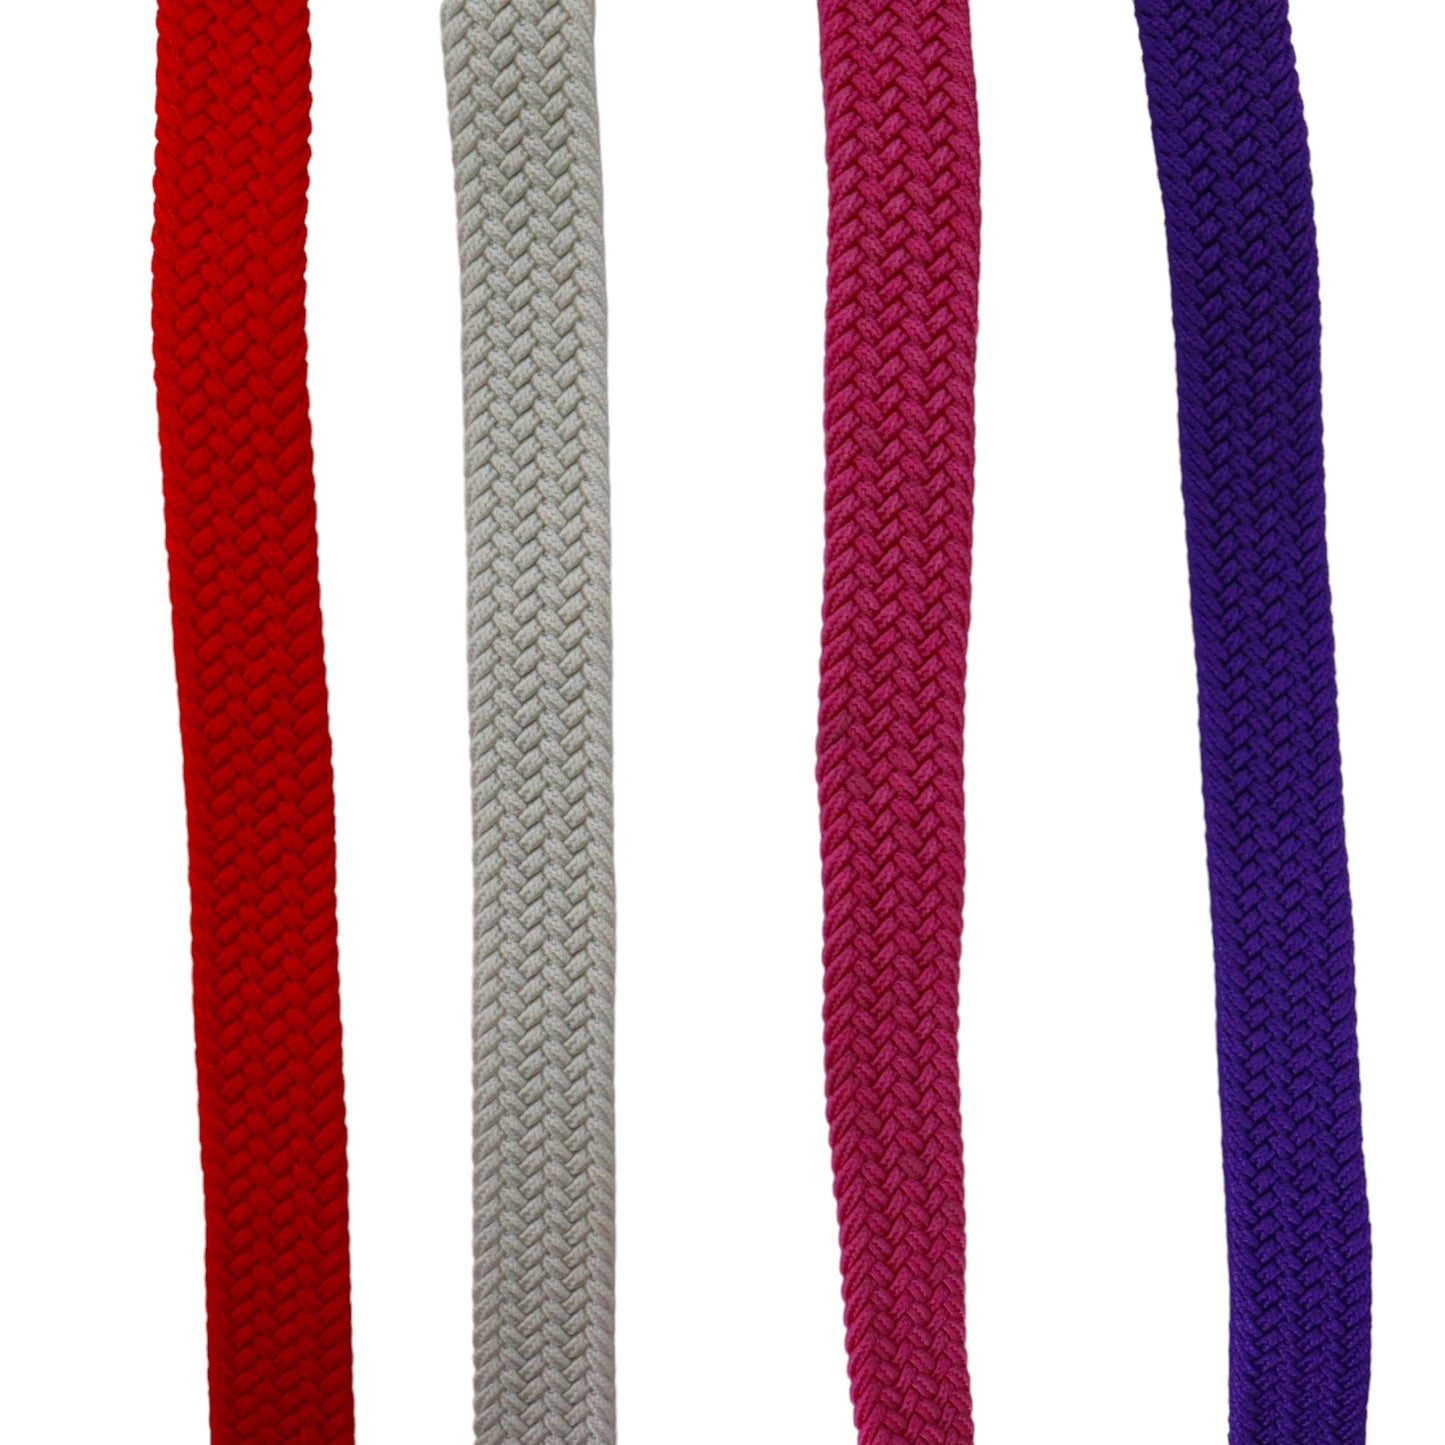 Elastische riem - 4 pak - dames riem - riem elastiek - smalle elastische riemen - gevlochten riem - Wit, paars, roze en rood.